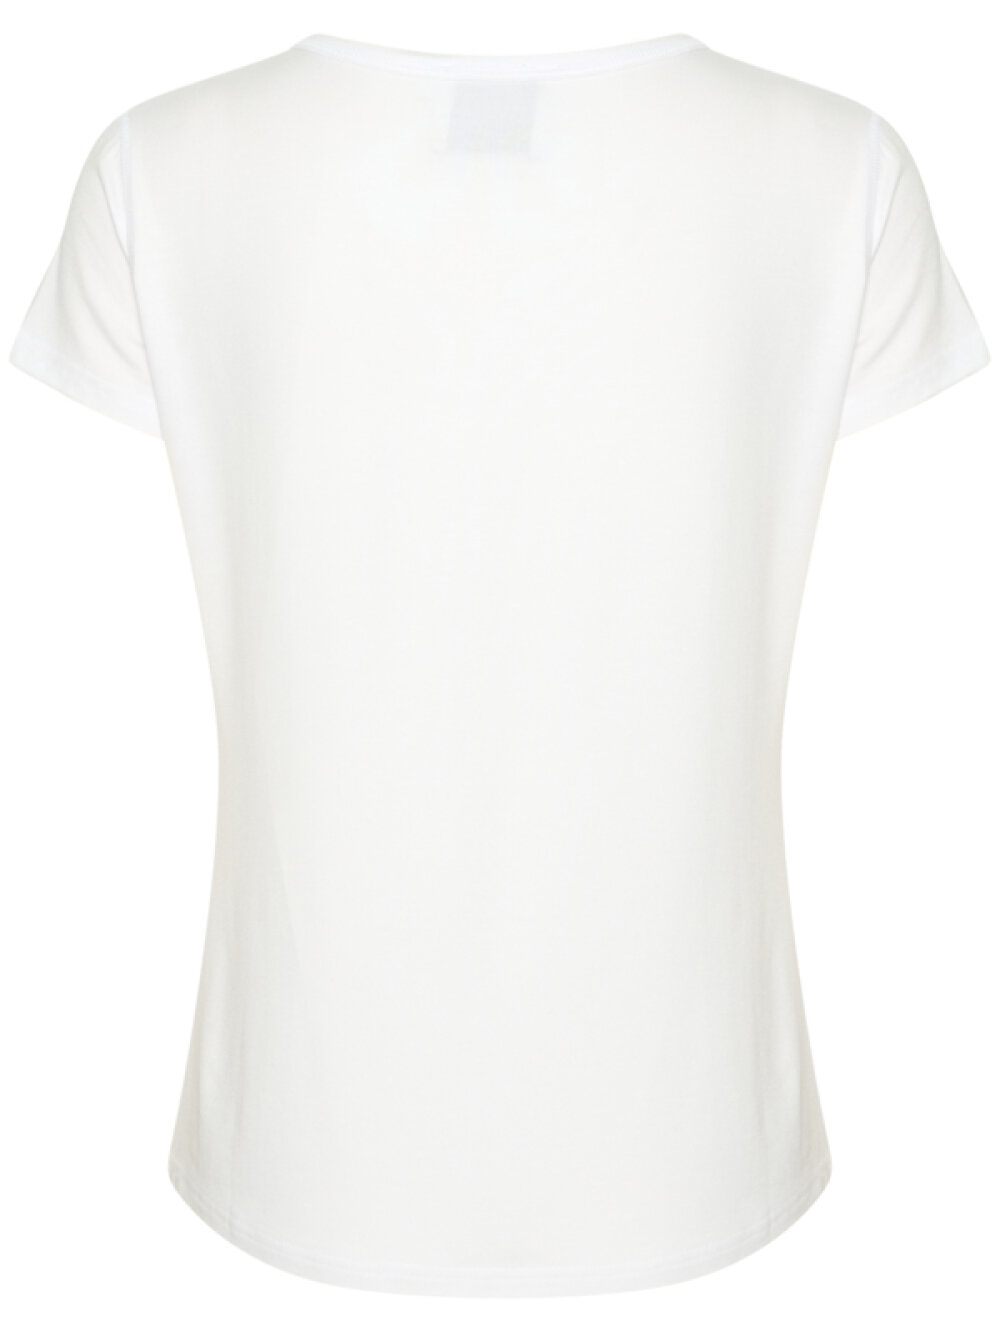 My Essential Wardrobe - My Essential Wardrobe 16 The Modal Tee T-shirt 110601